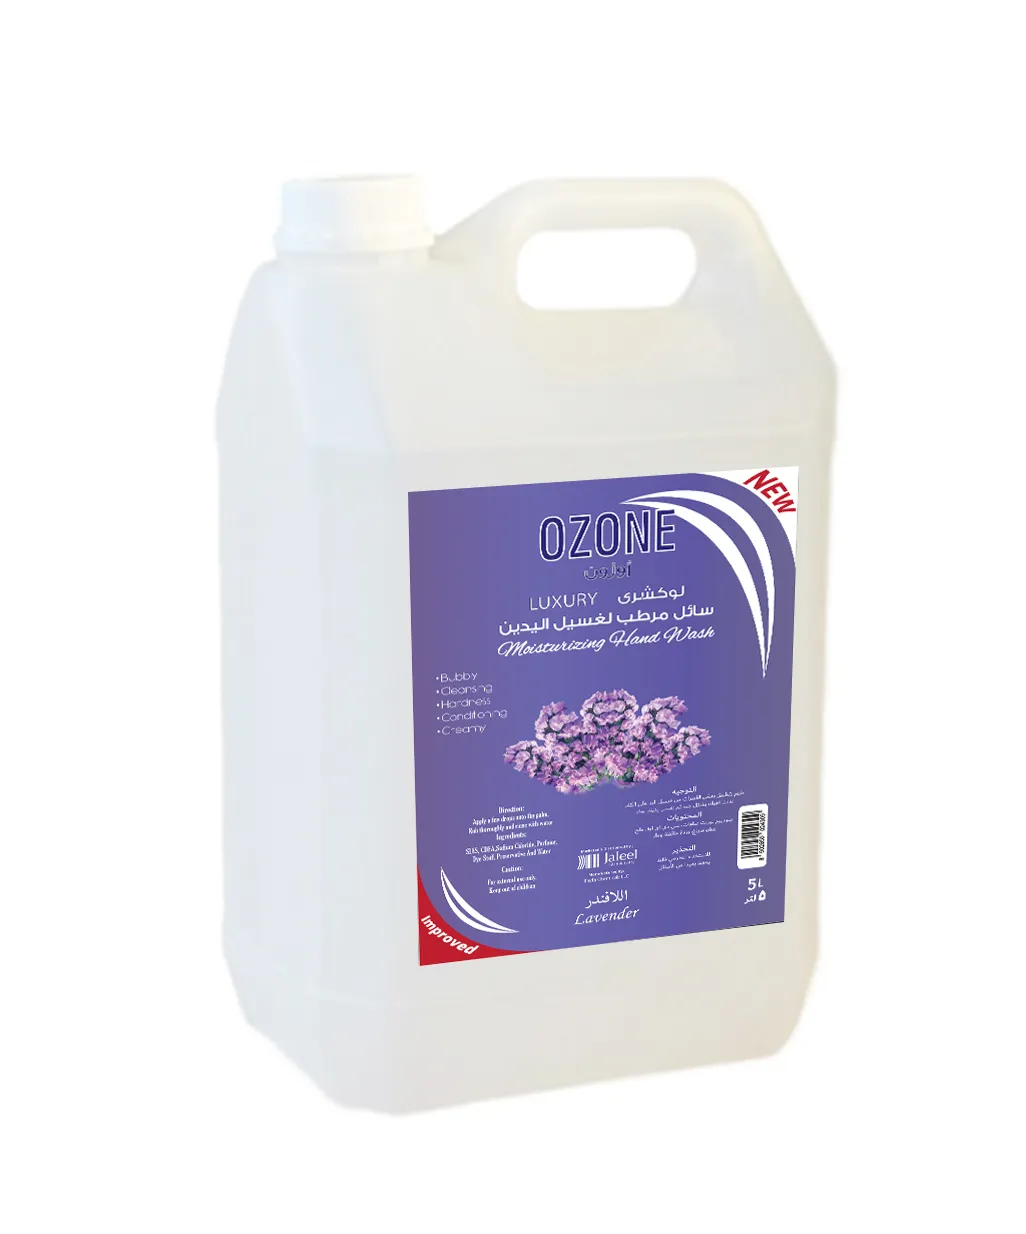 Ozone Lavender Luxury Hand Wash, 5 Liter